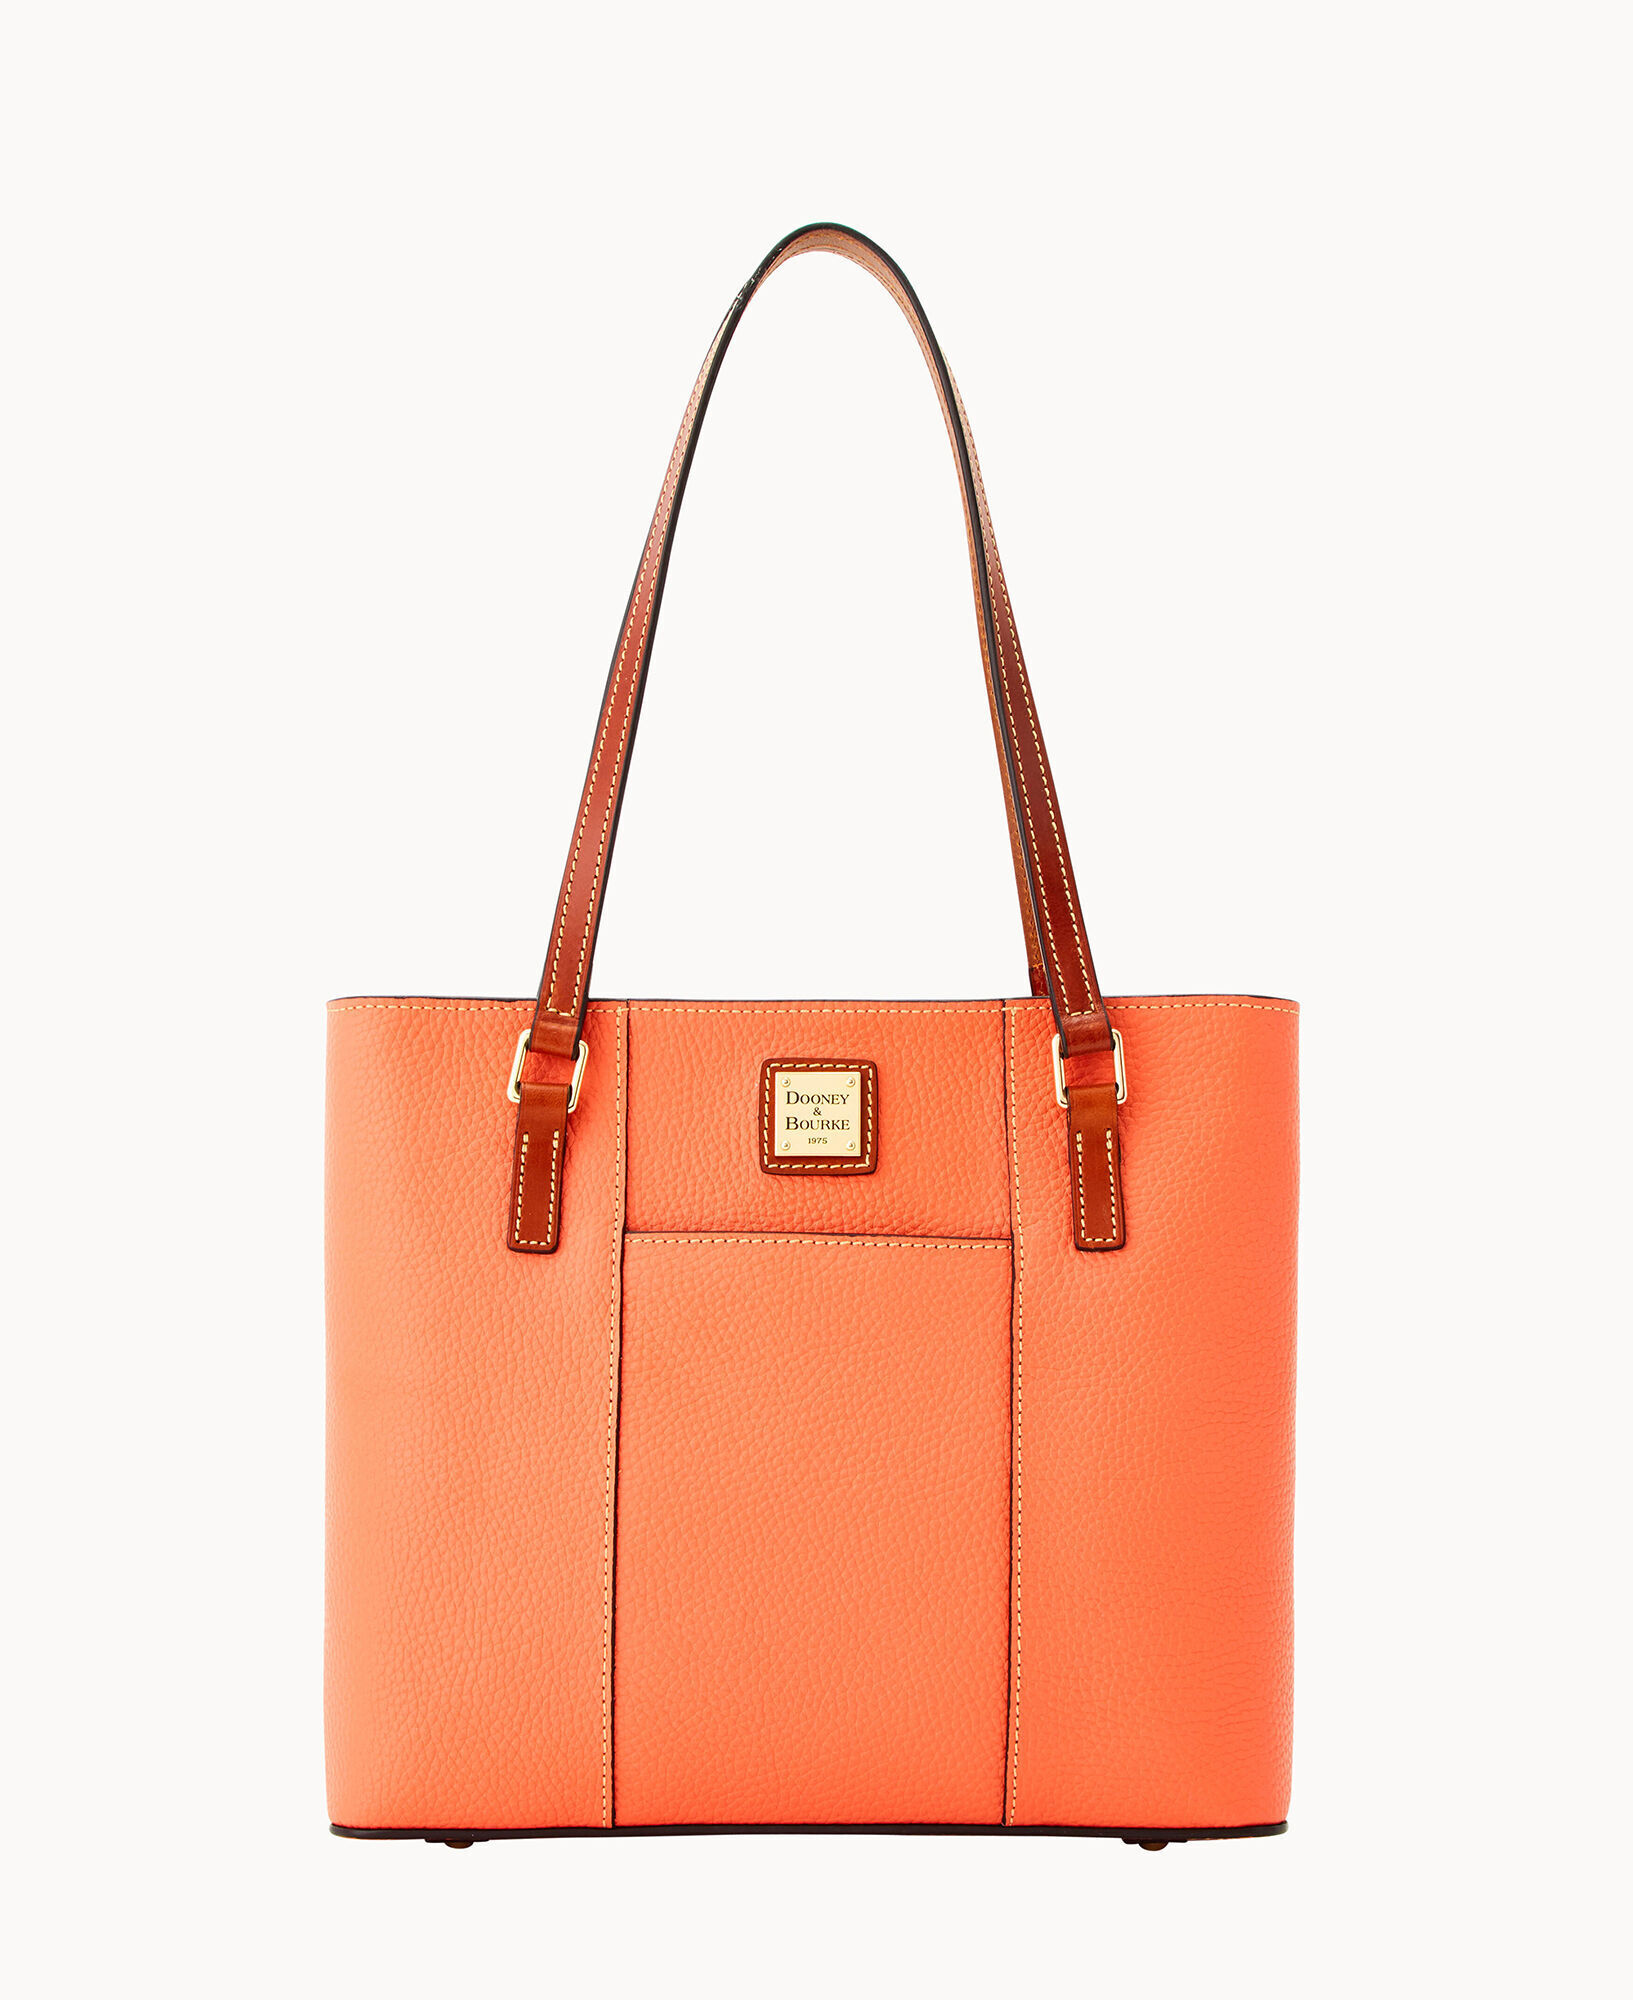 Dooney & Bourke Orange Handbags